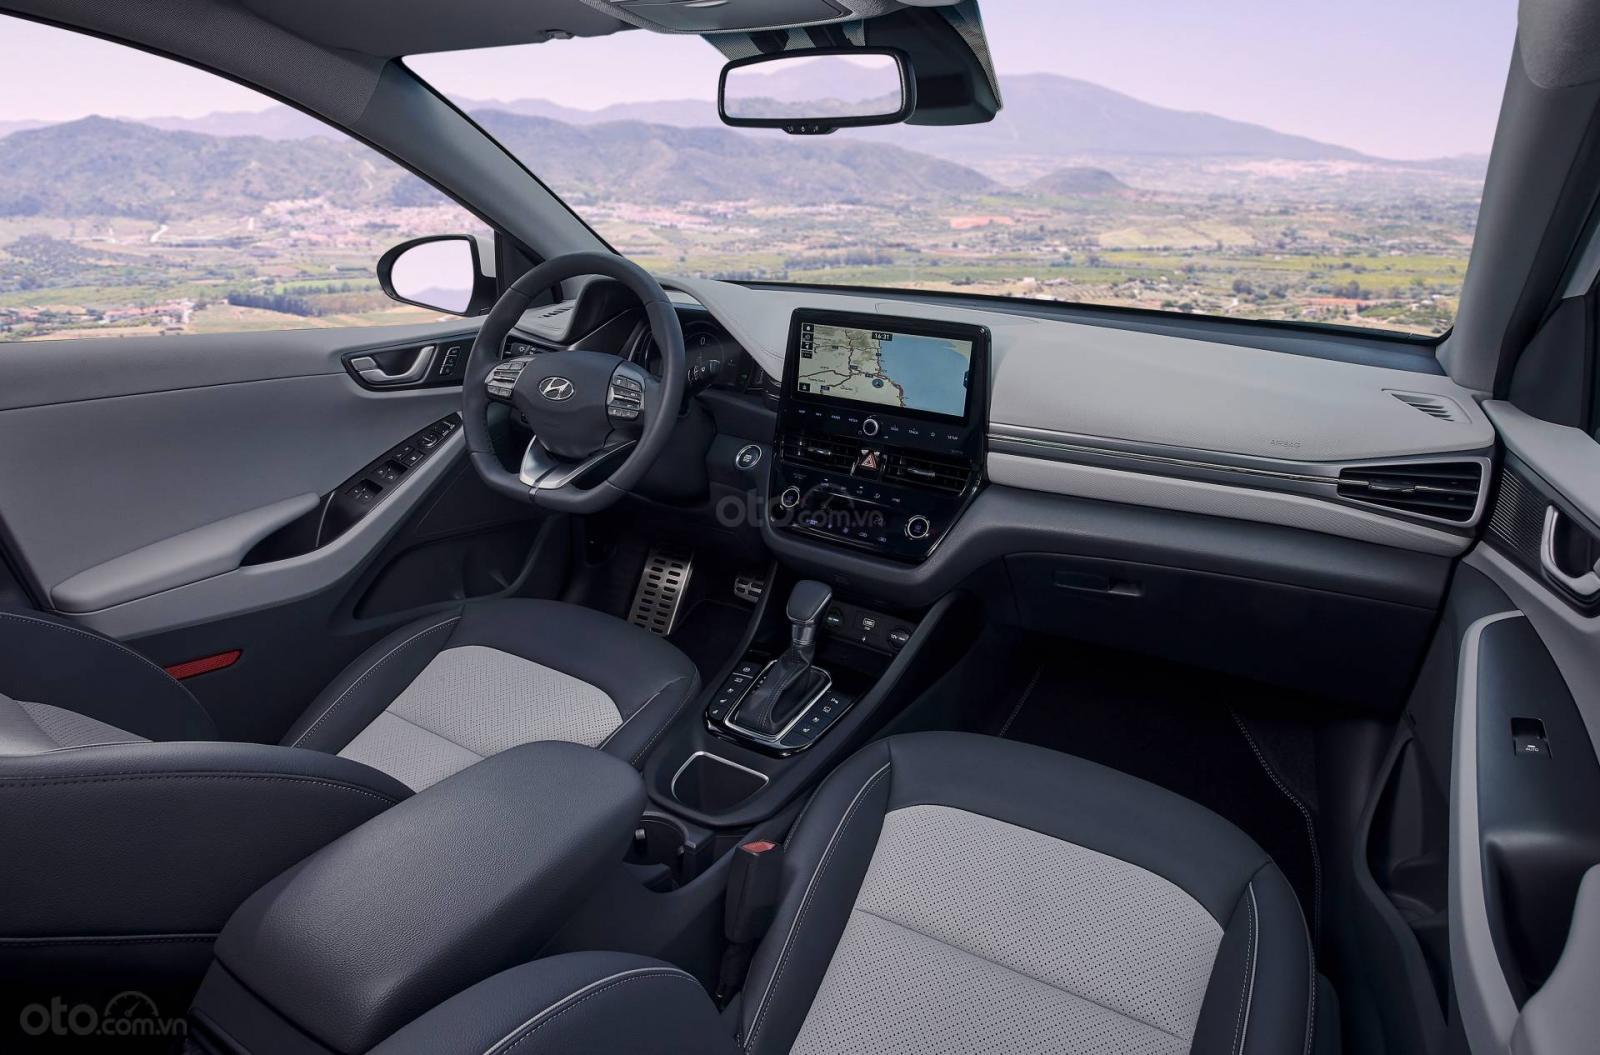 Hyundai Ioniq 2020 tích hợp công nghệ hiện đại